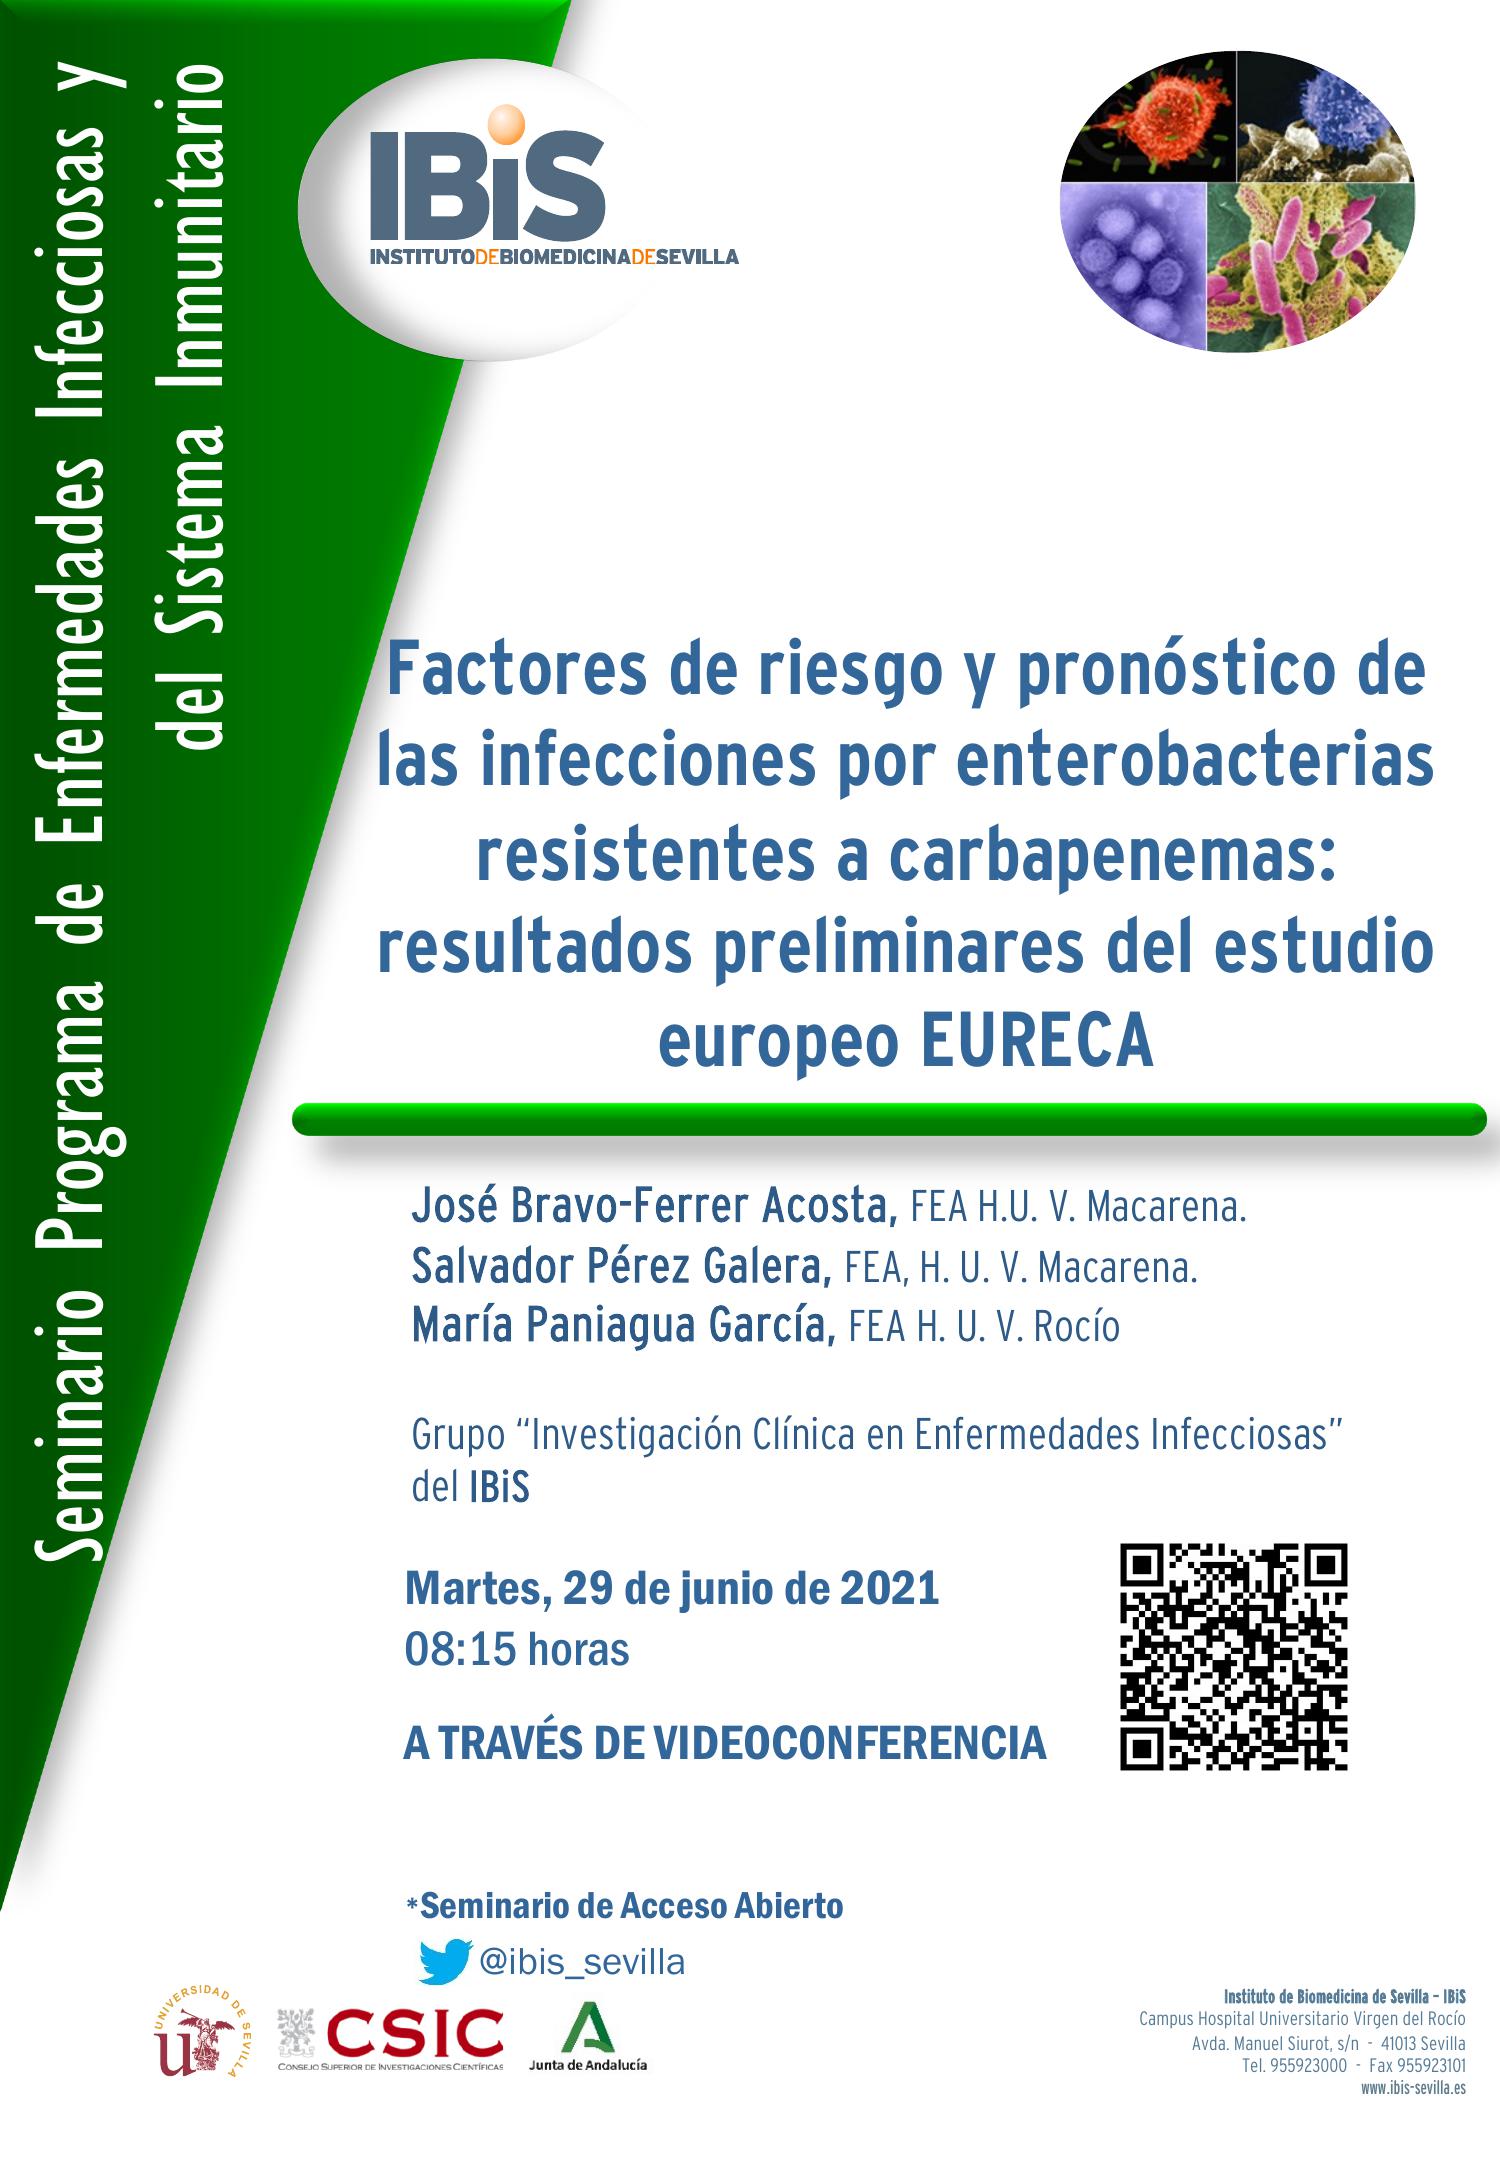 Poster: Factores de riesgo y pronóstico de las infecciones por enterobacterias resistentes a carbapenemas: resultados preliminares del estudio europeo EURECA